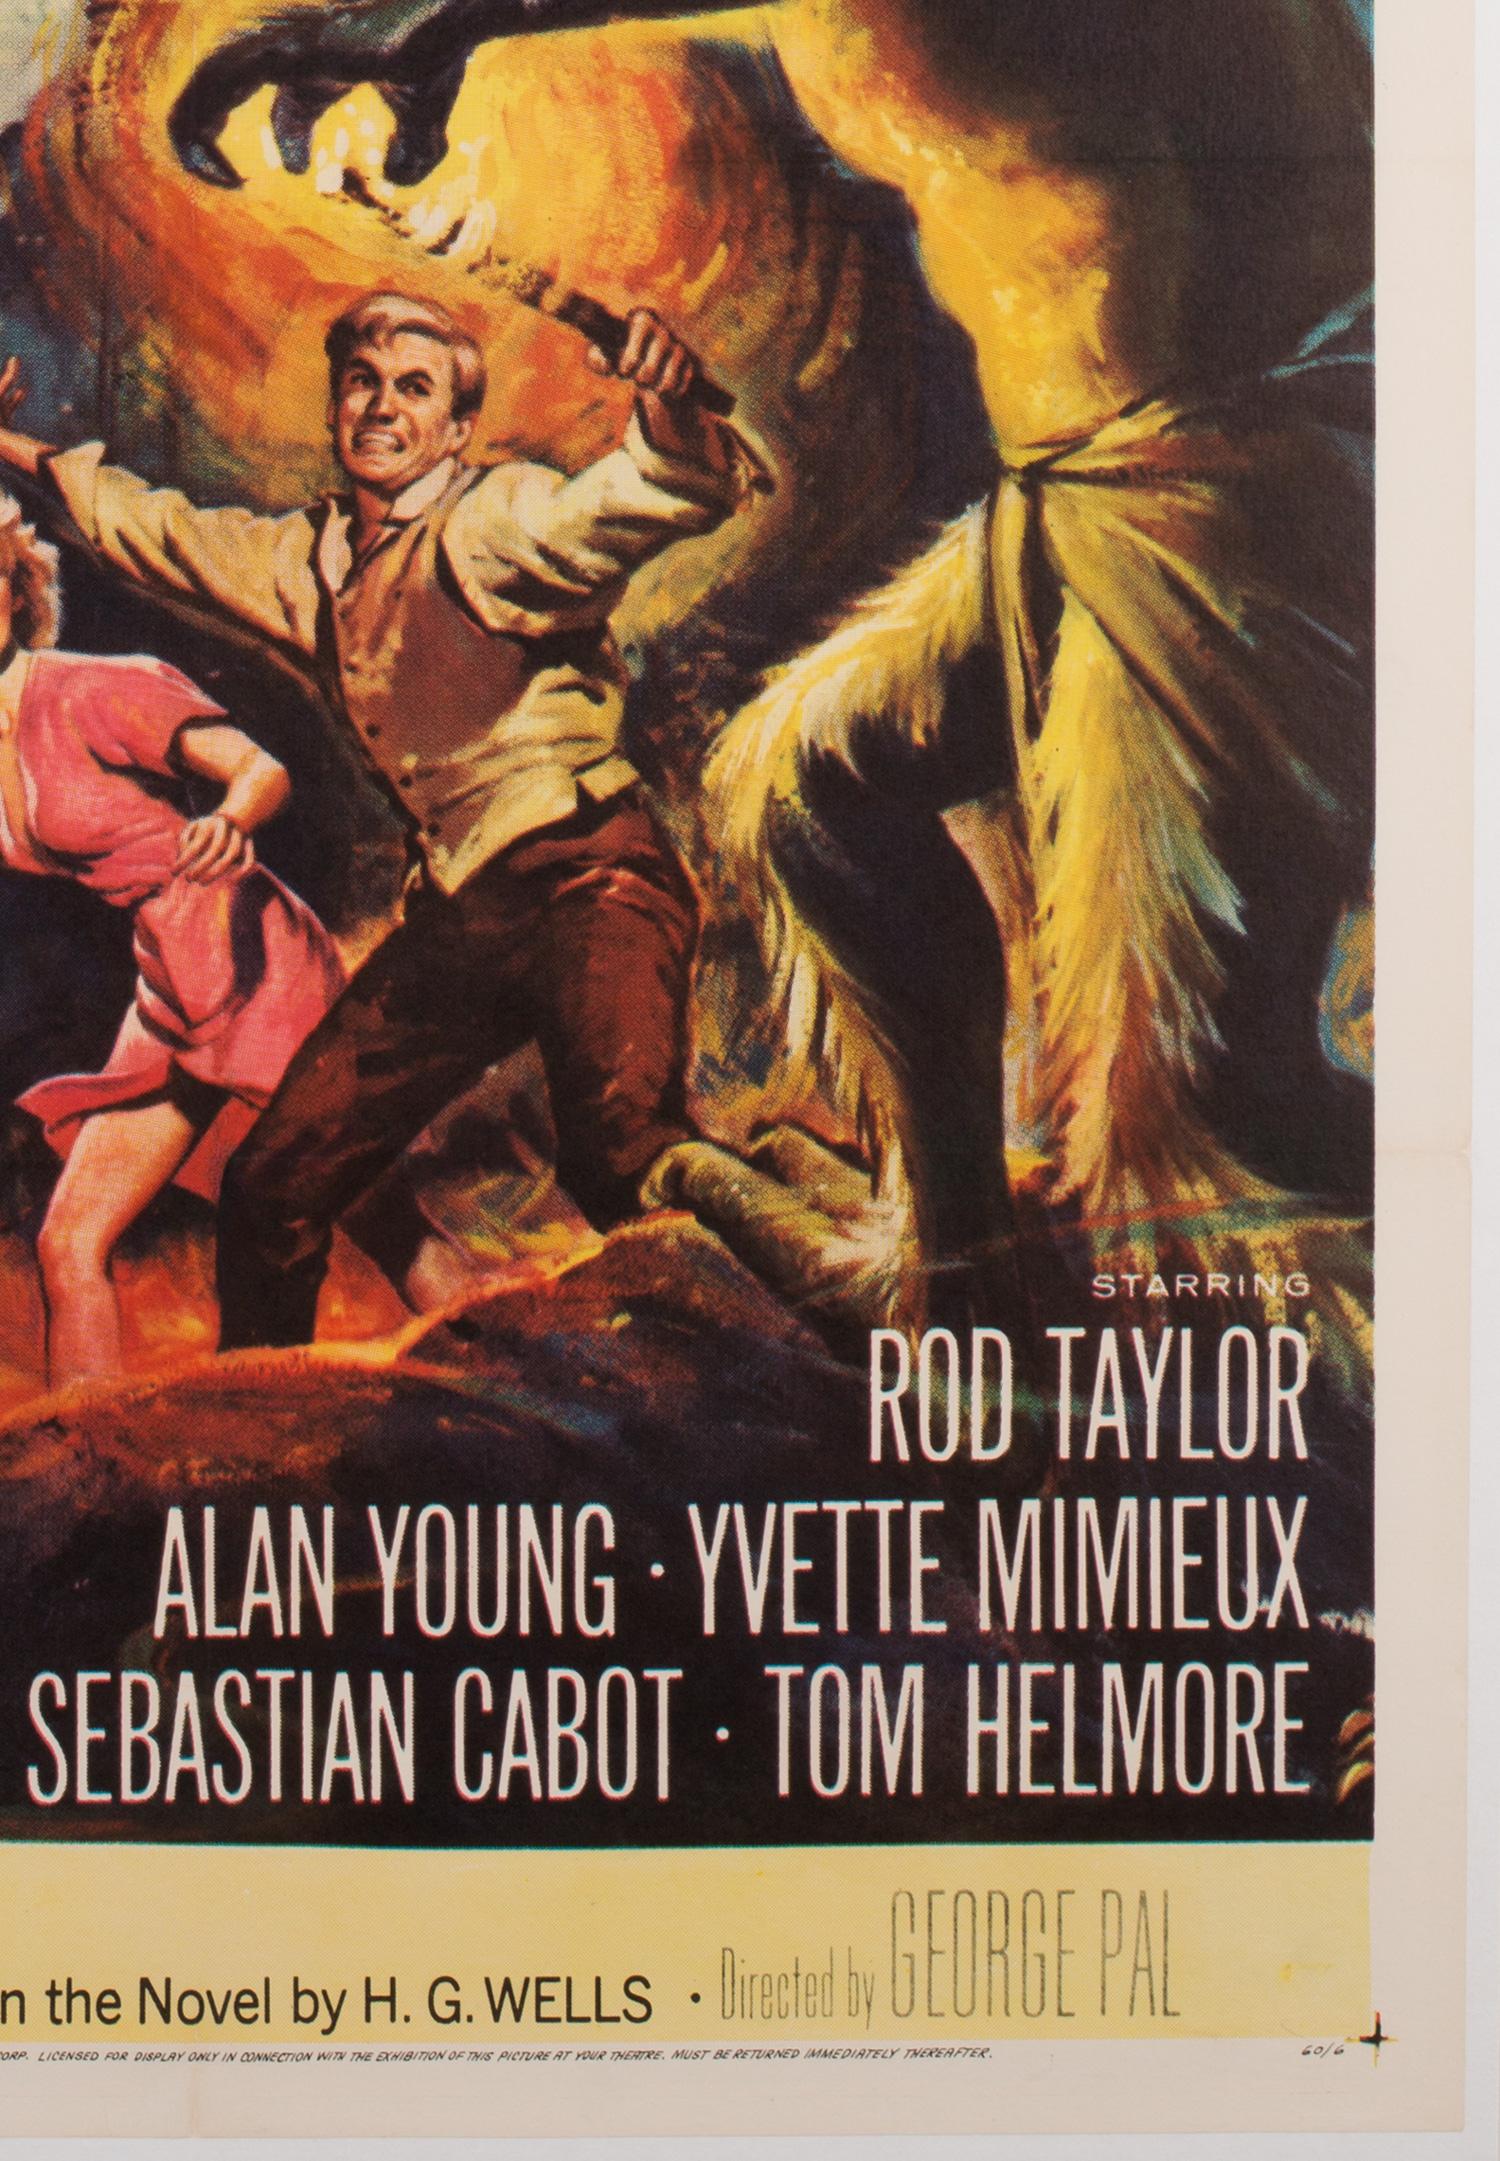 Magnifique affiche de film de science-fiction classique des années 1960, The Time Machine. Fabuleux travail artistique de Reynold Brown.

Vous auriez du mal à en trouver un autre en meilleur état... même si vous aviez une machine à remonter le